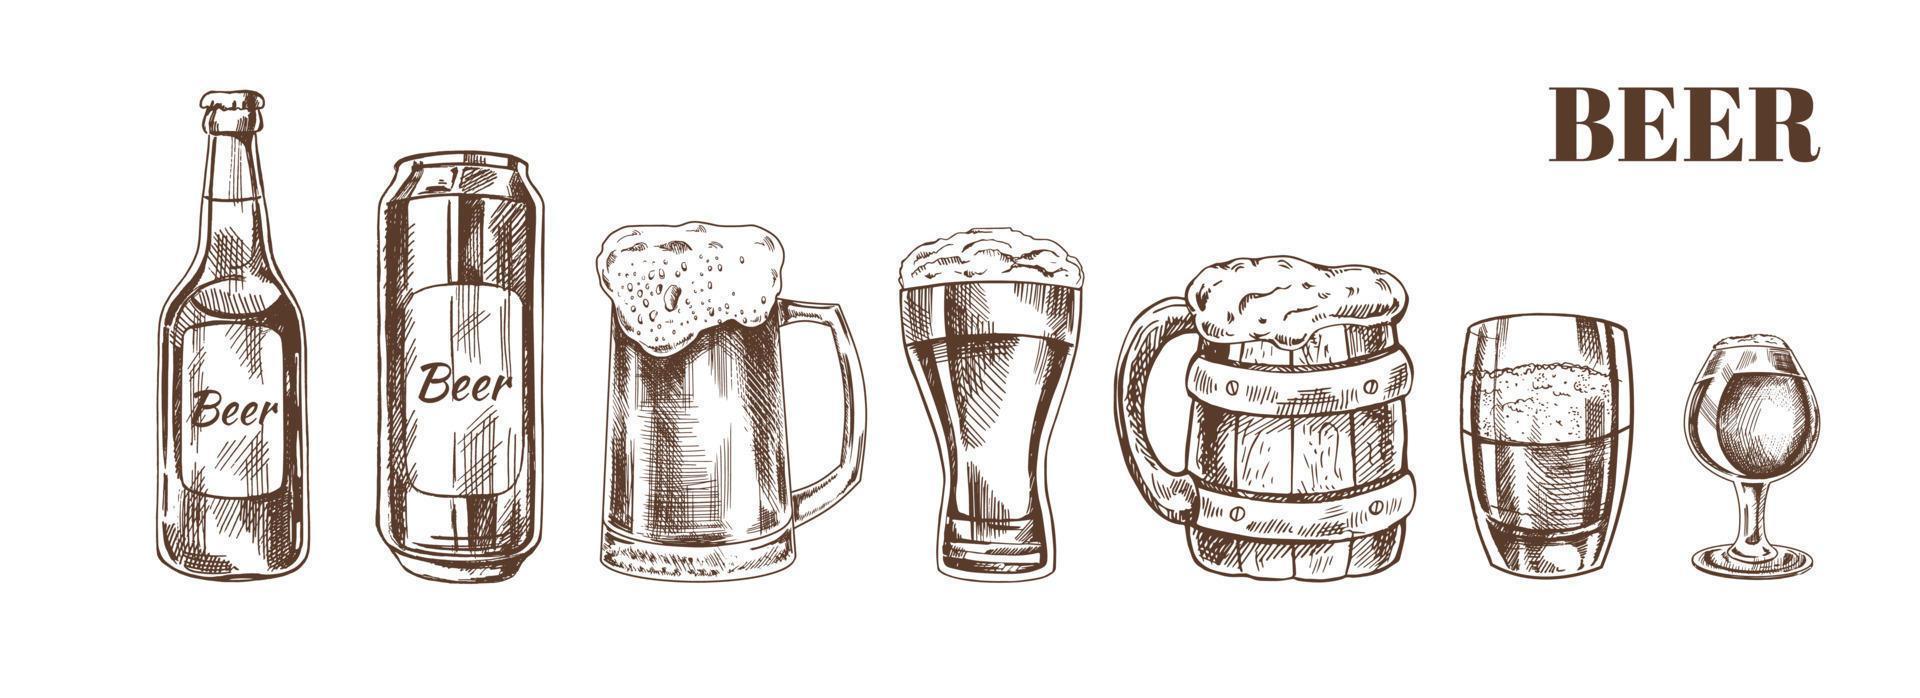 ritad för hand skiss av öl burk, öl flaska, öl glasögon och öl glas och trä- muggar isolerat på vit bakgrund. vektor årgång graverat illustration